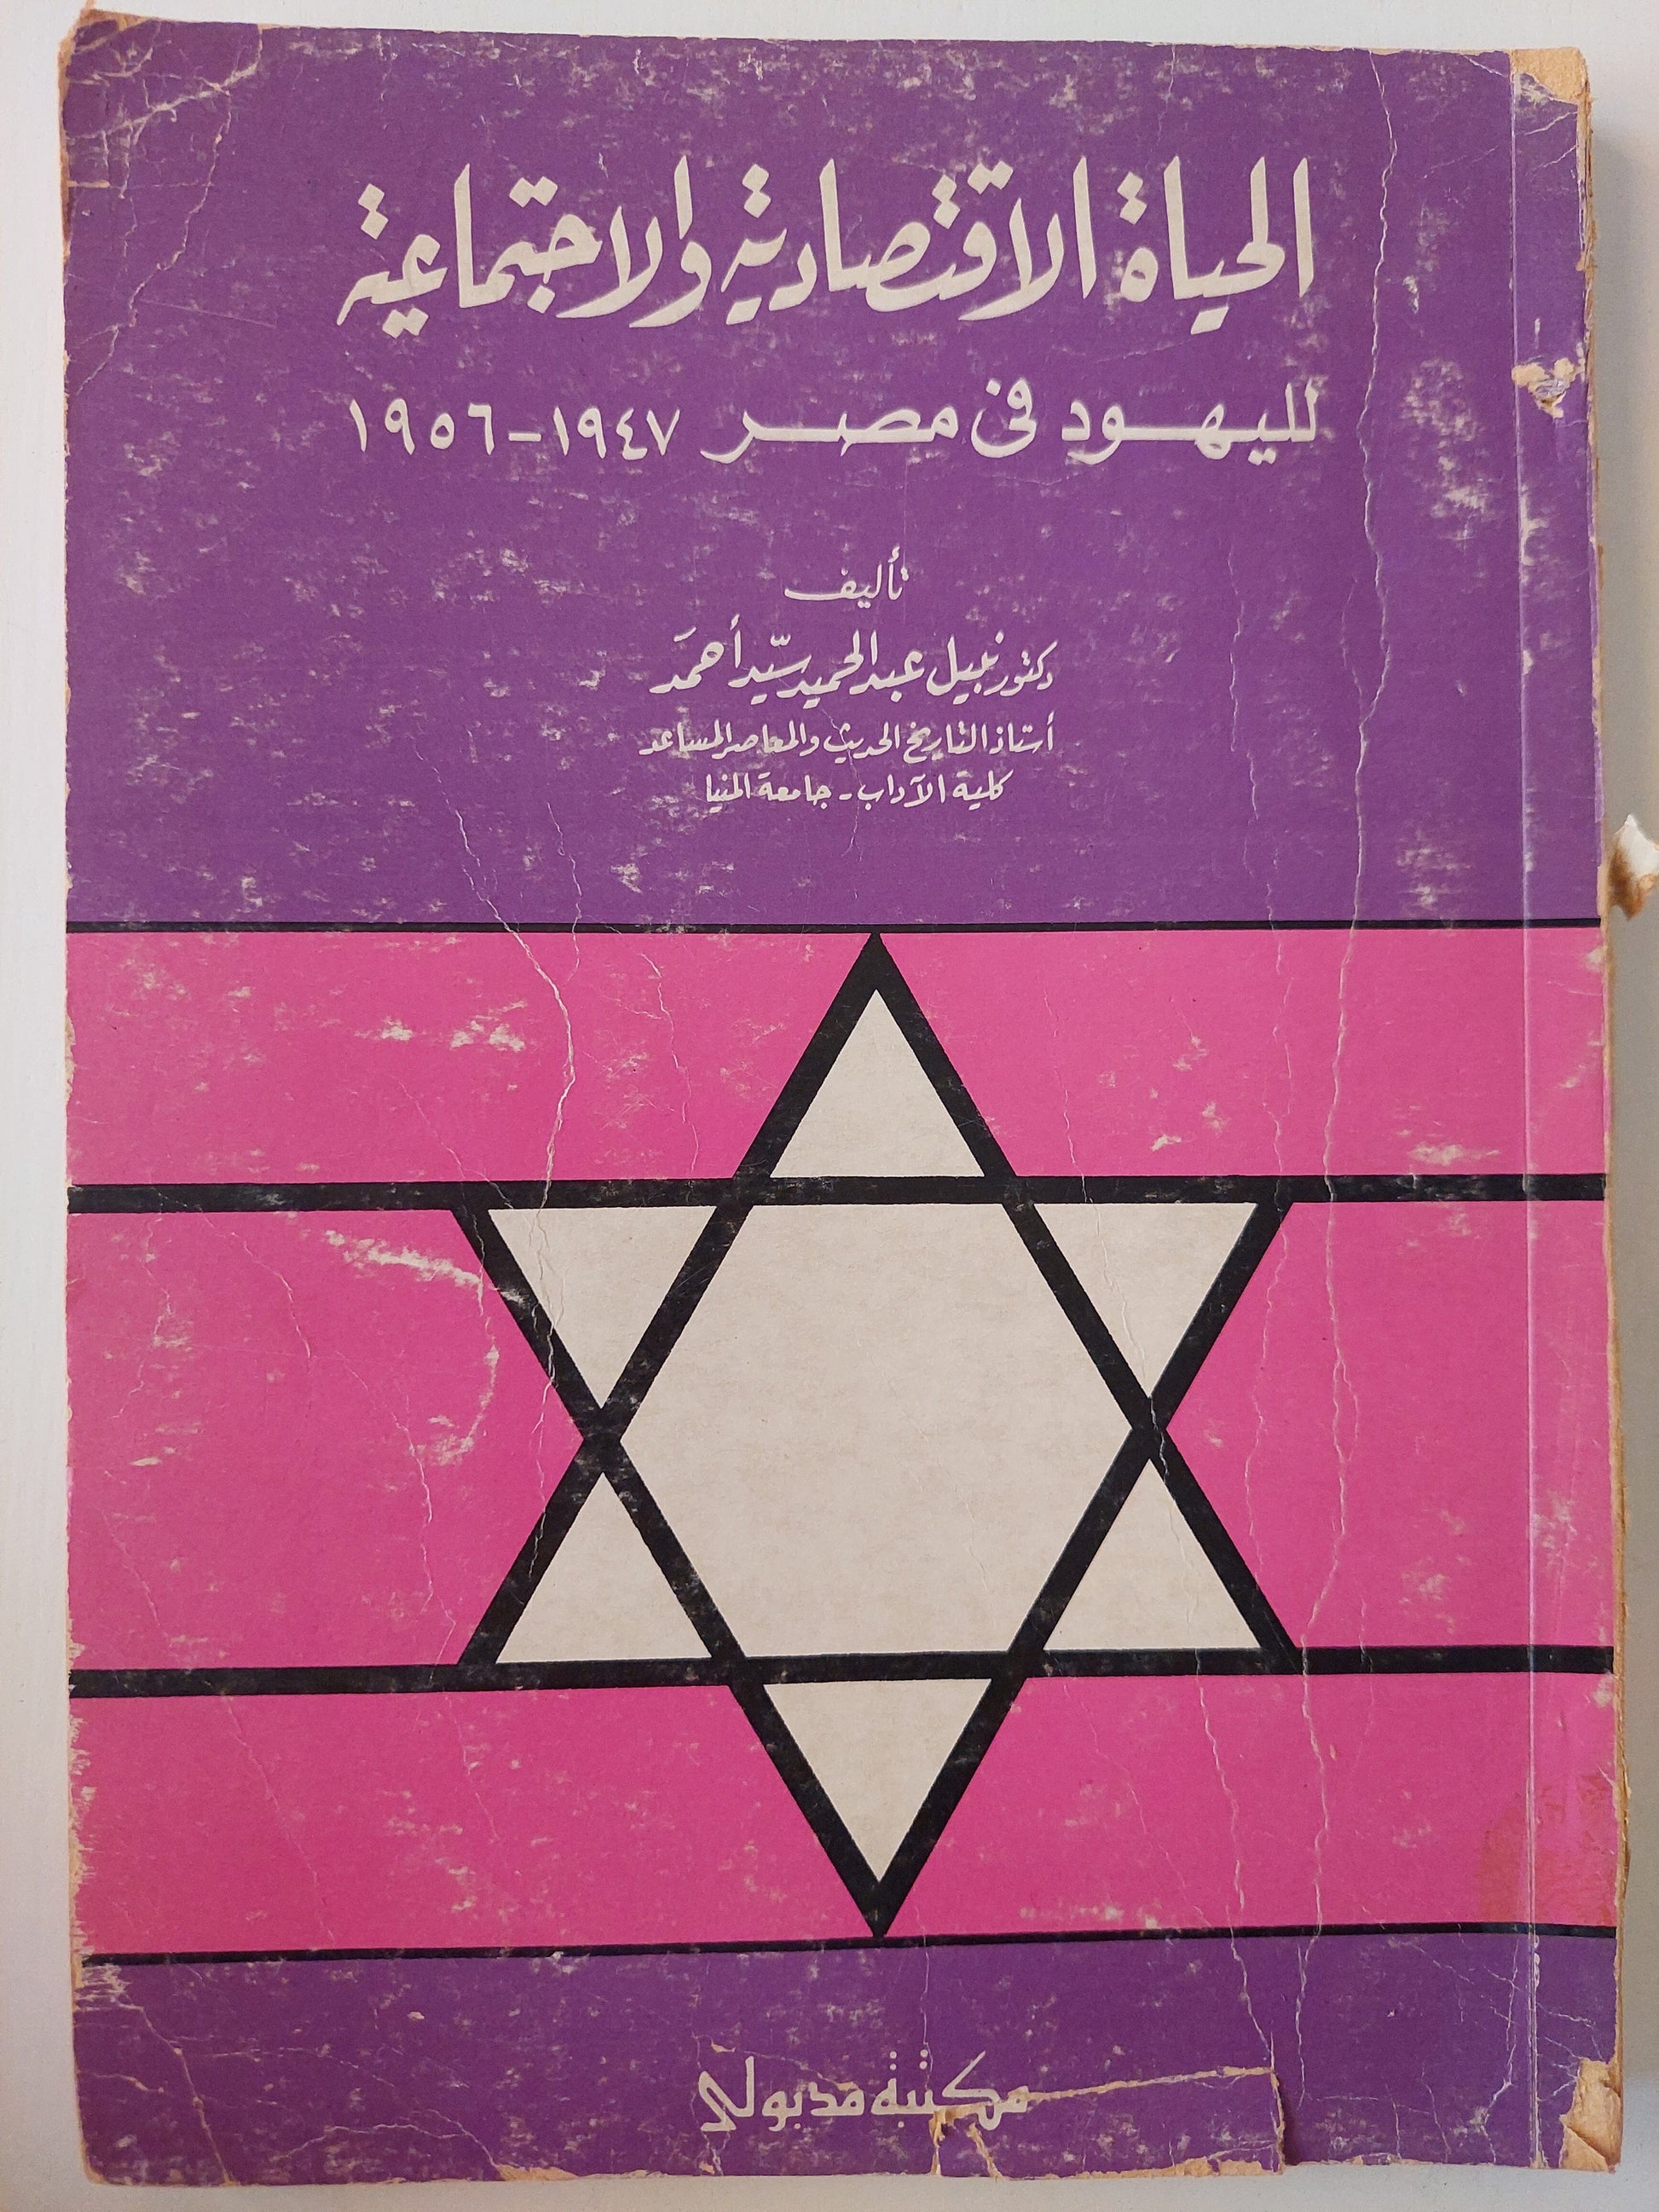 الحياة الاقتصادية والاجتماعية لليهود في مصر 1947 - 1956 كتاب المكتبة الفلسفية 